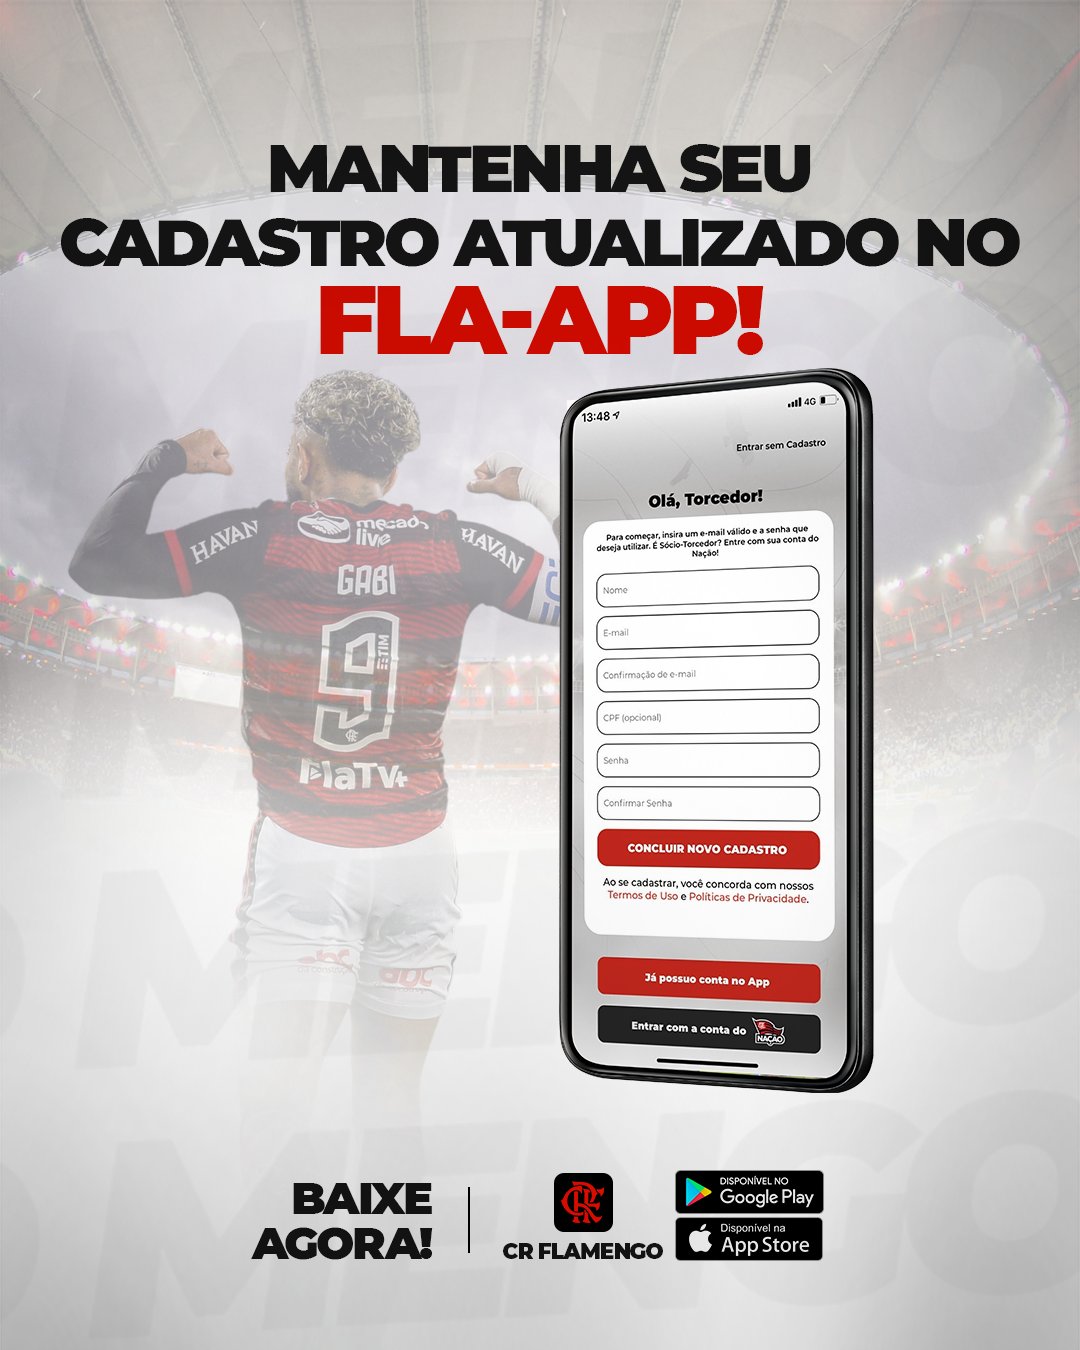 Flamengo on X: Nação, aqui no Fla-APP você encontra todos os